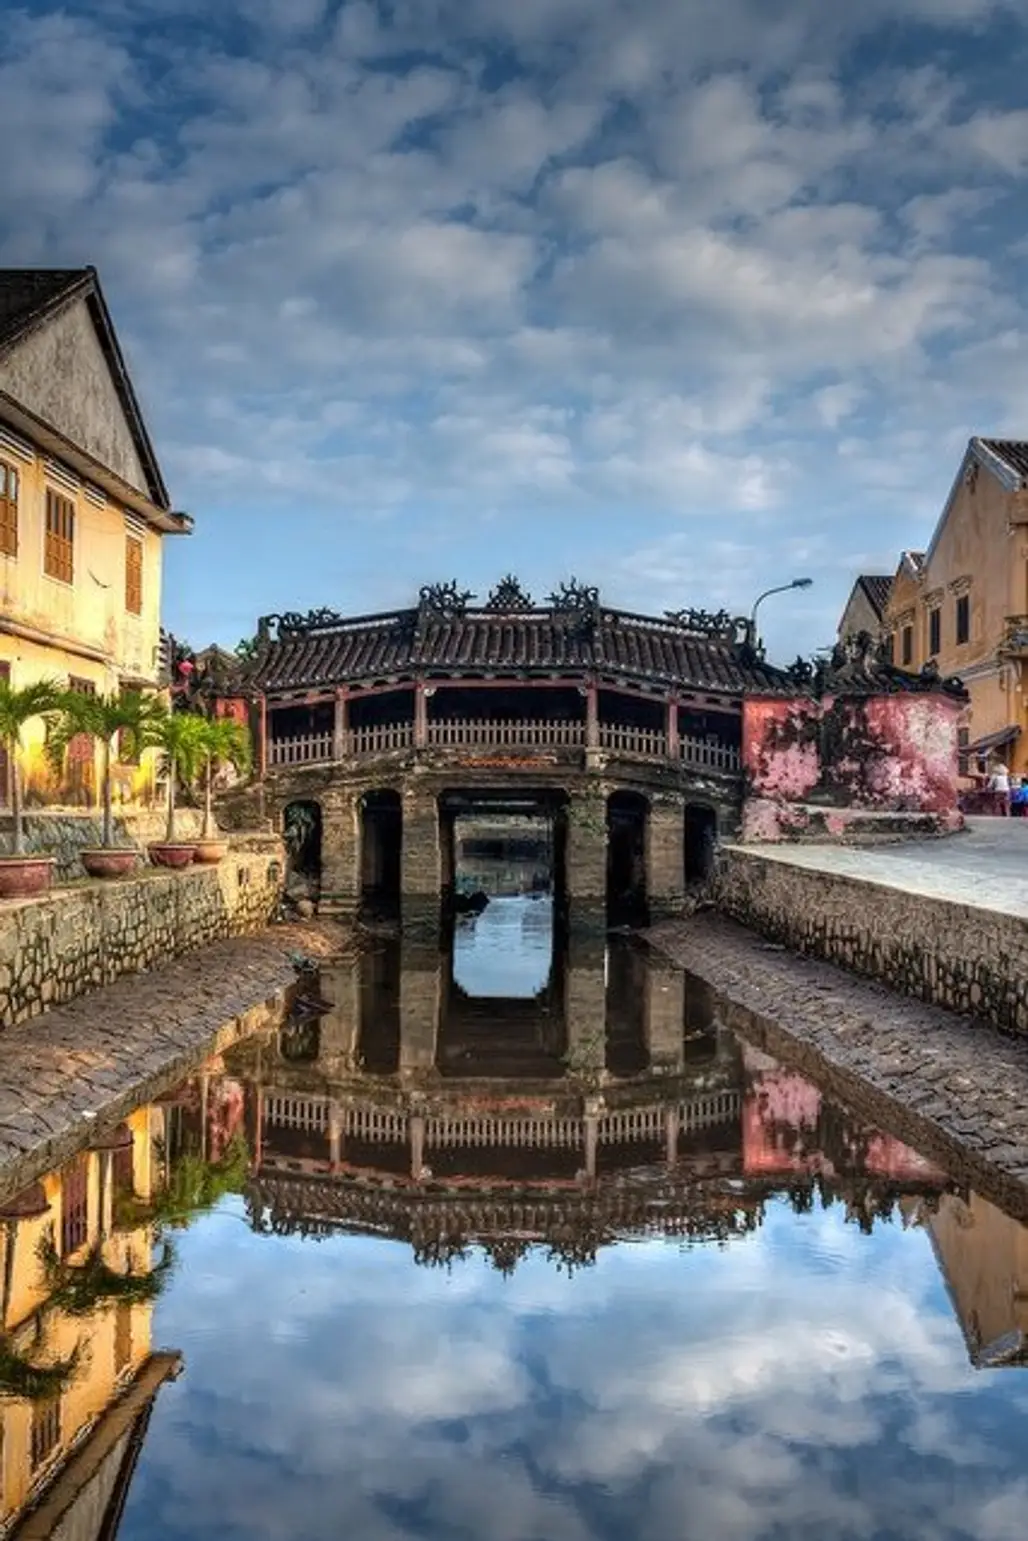 Japanese Covered Bridge,reflection,landmark,town,river,